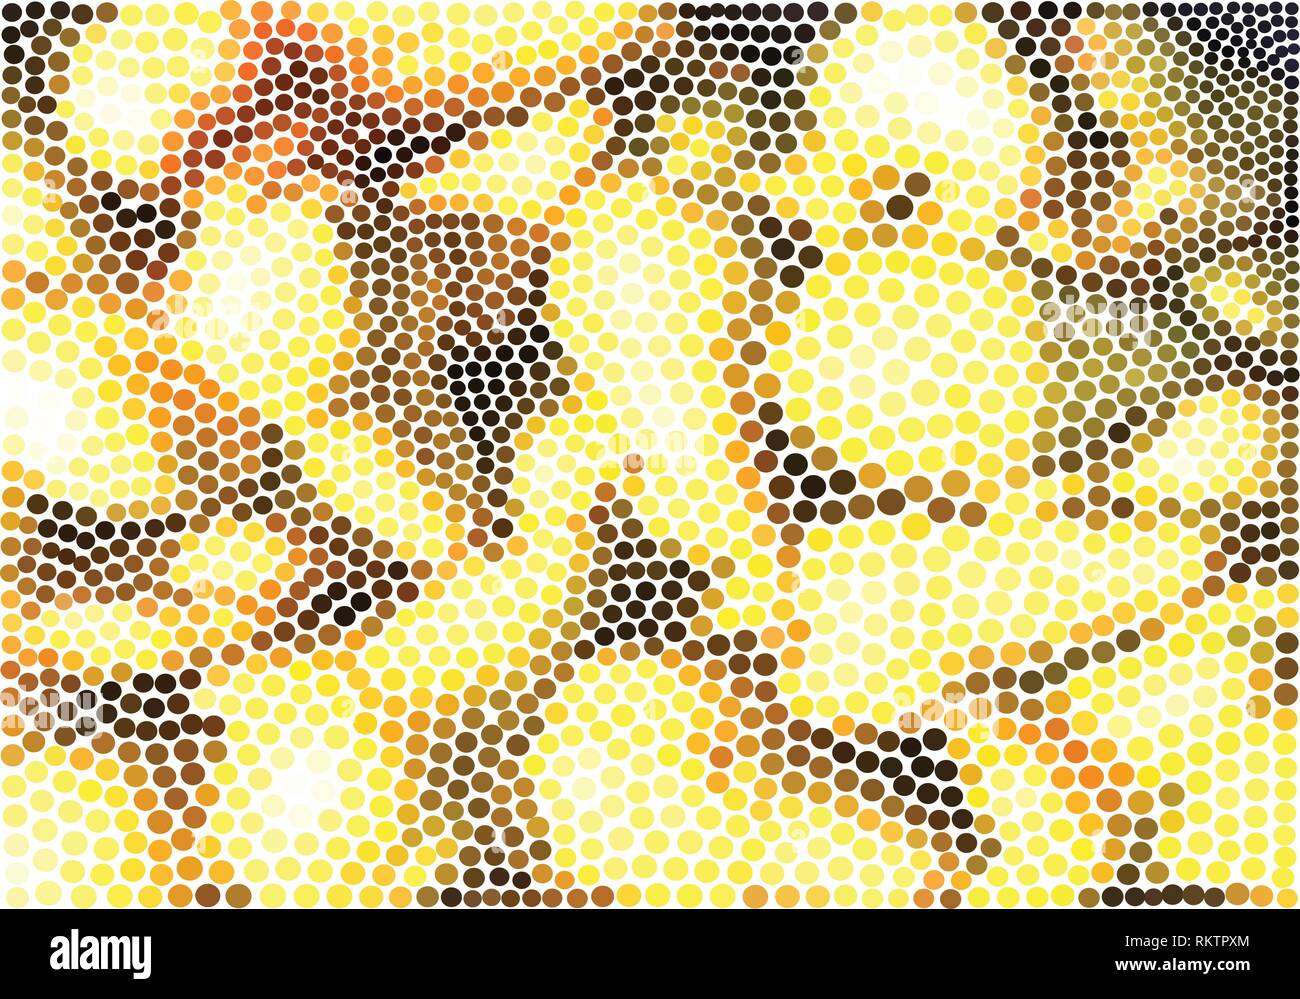 Abstract vector illustration points de poires en jaune, brun et noir Illustration de Vecteur